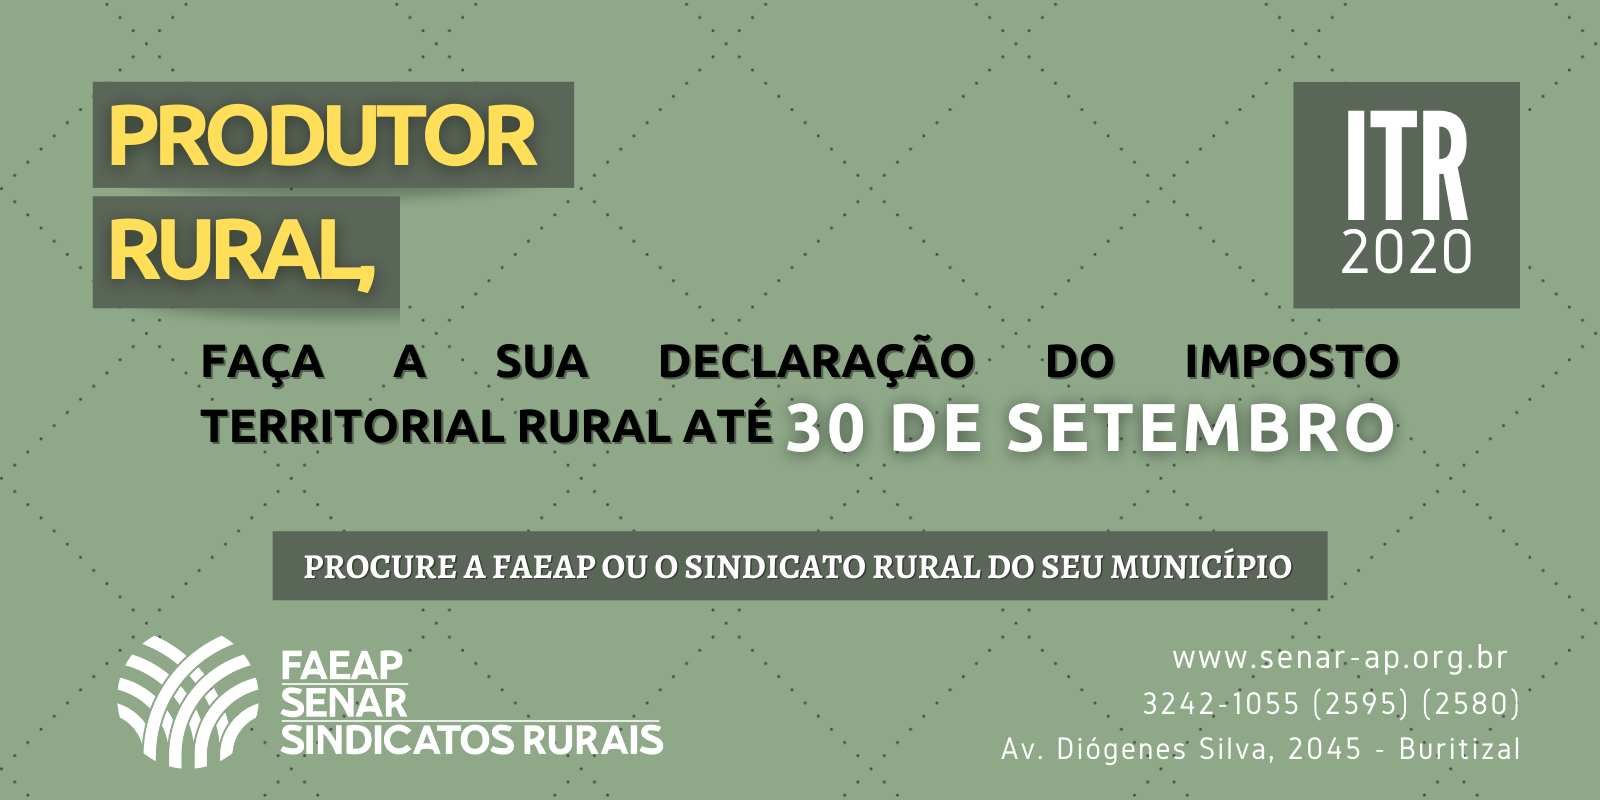 ITR 2020: produtor rural do Amapá tem até 30 de setembro para declarar imposto sobre propriedade rural